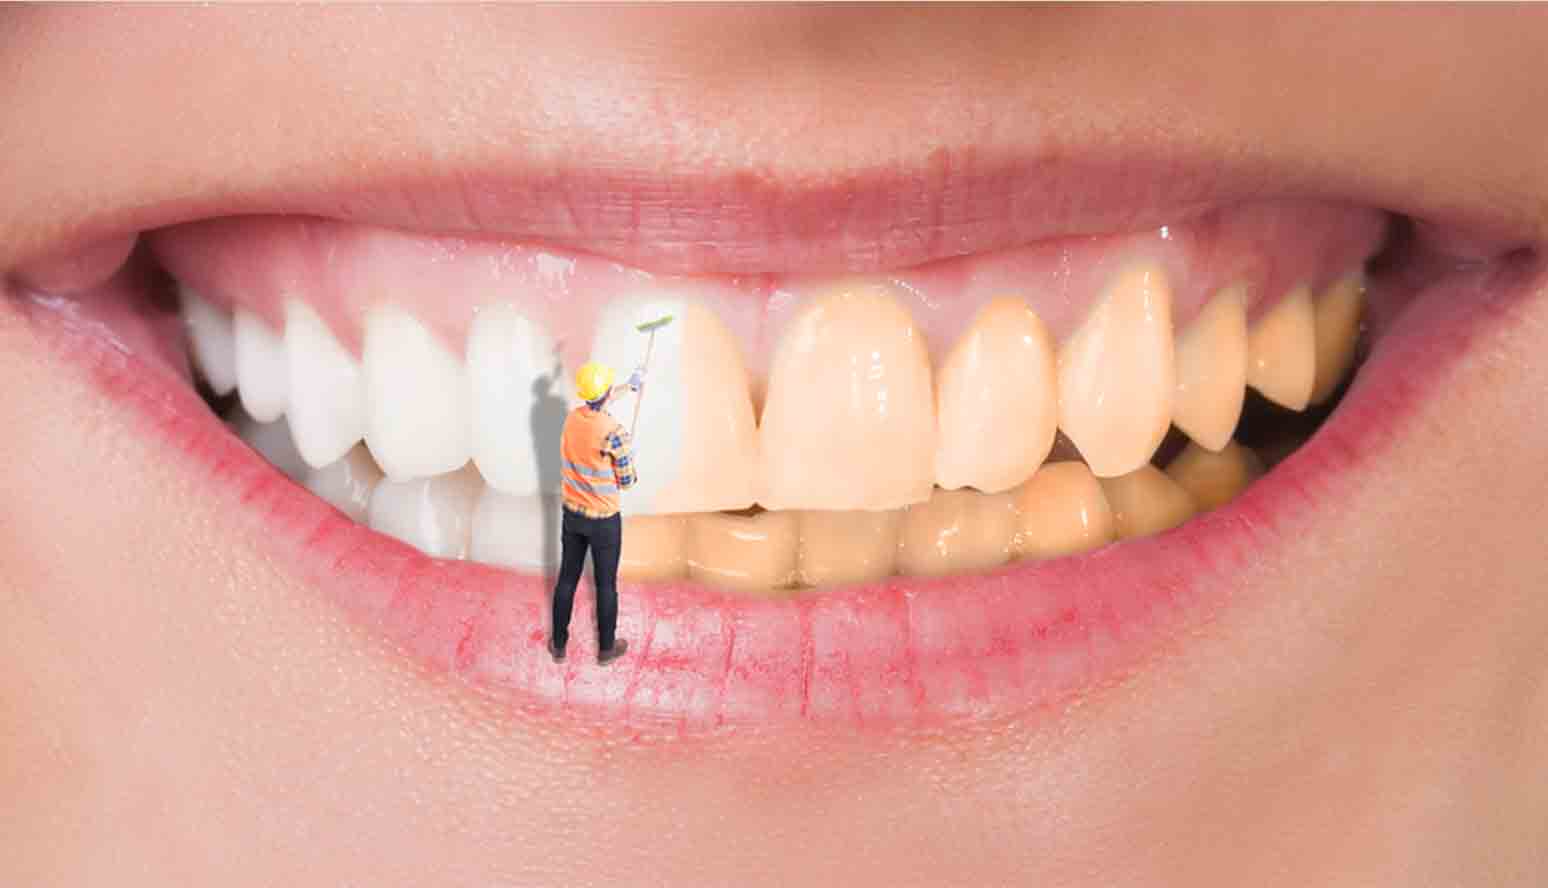 تبييض الأسنان في المنزل بمكونات طبيعية لا يعرفها الكثيرون قولي وداعاً للاصفرار والبقع